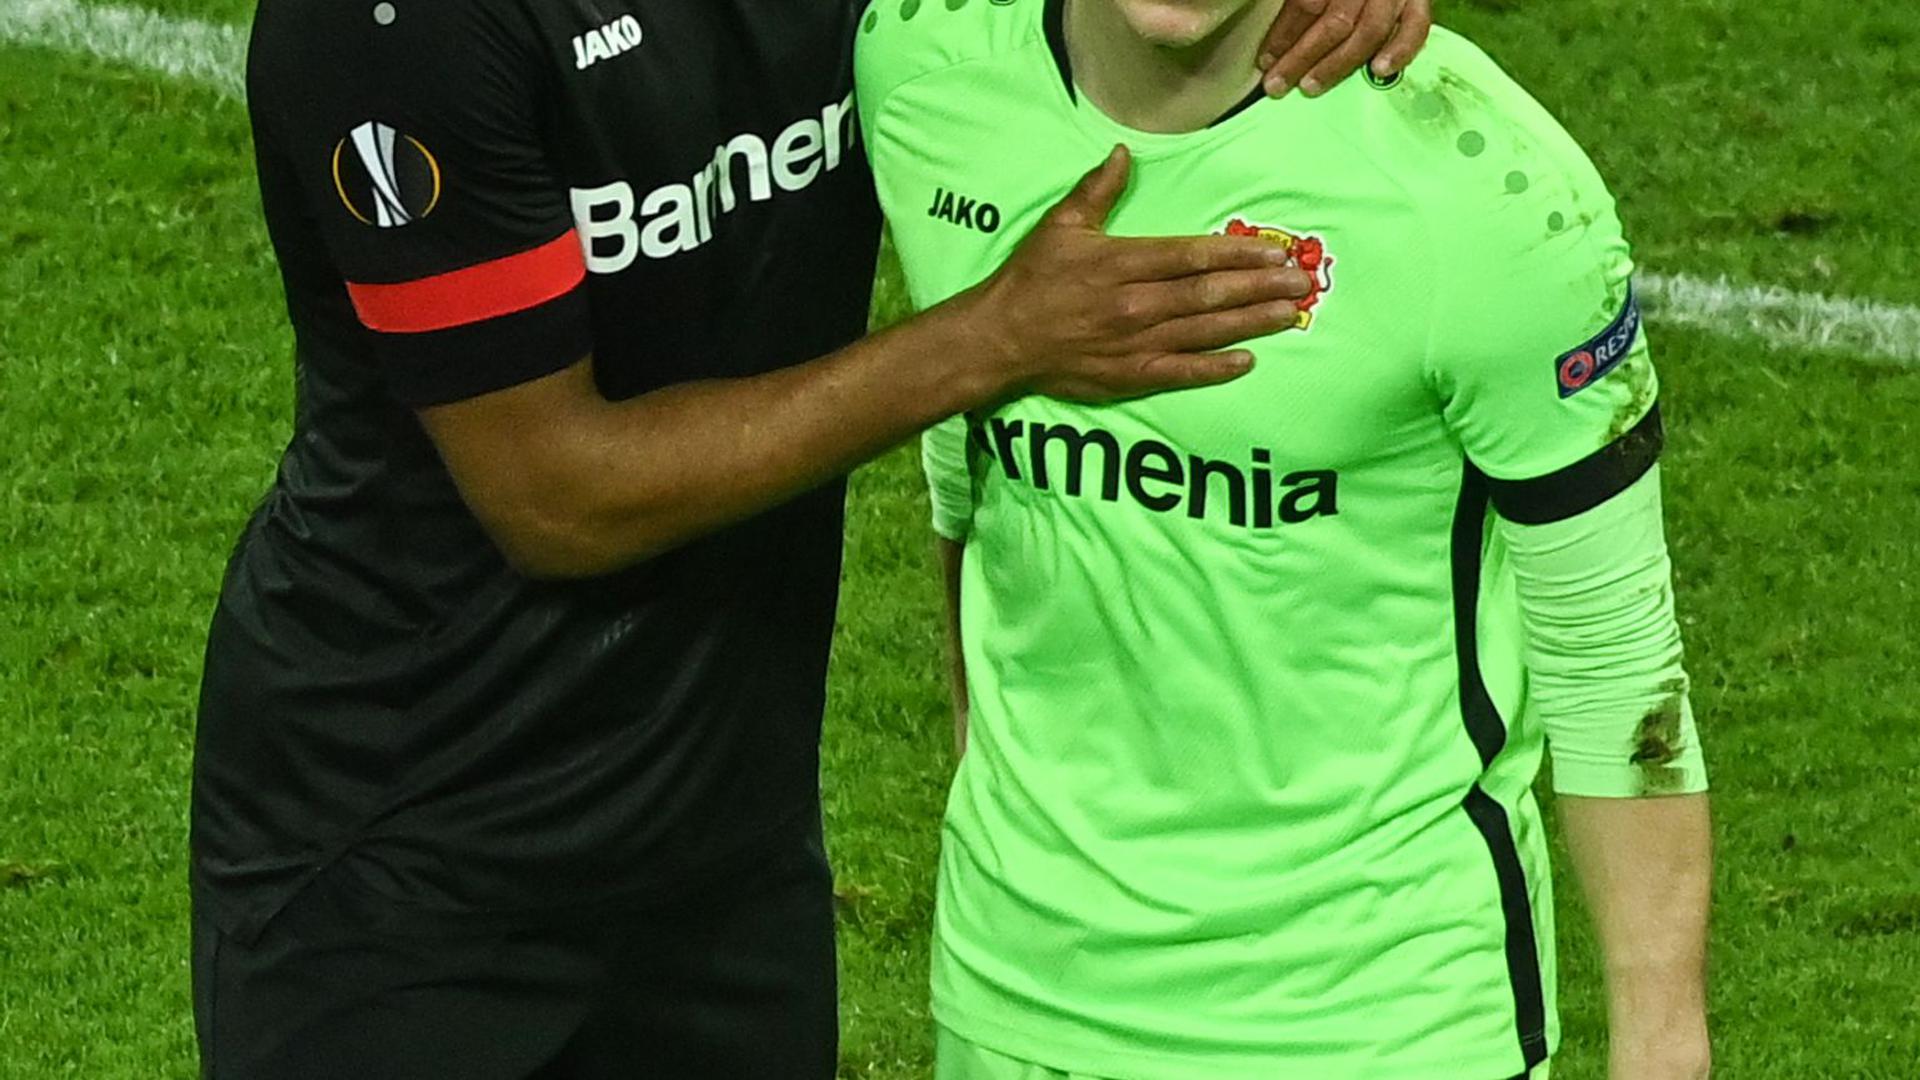 Leverkusens Jonathan Tah (l) und Niklas Lomb nach dem Aus gegen Bern.